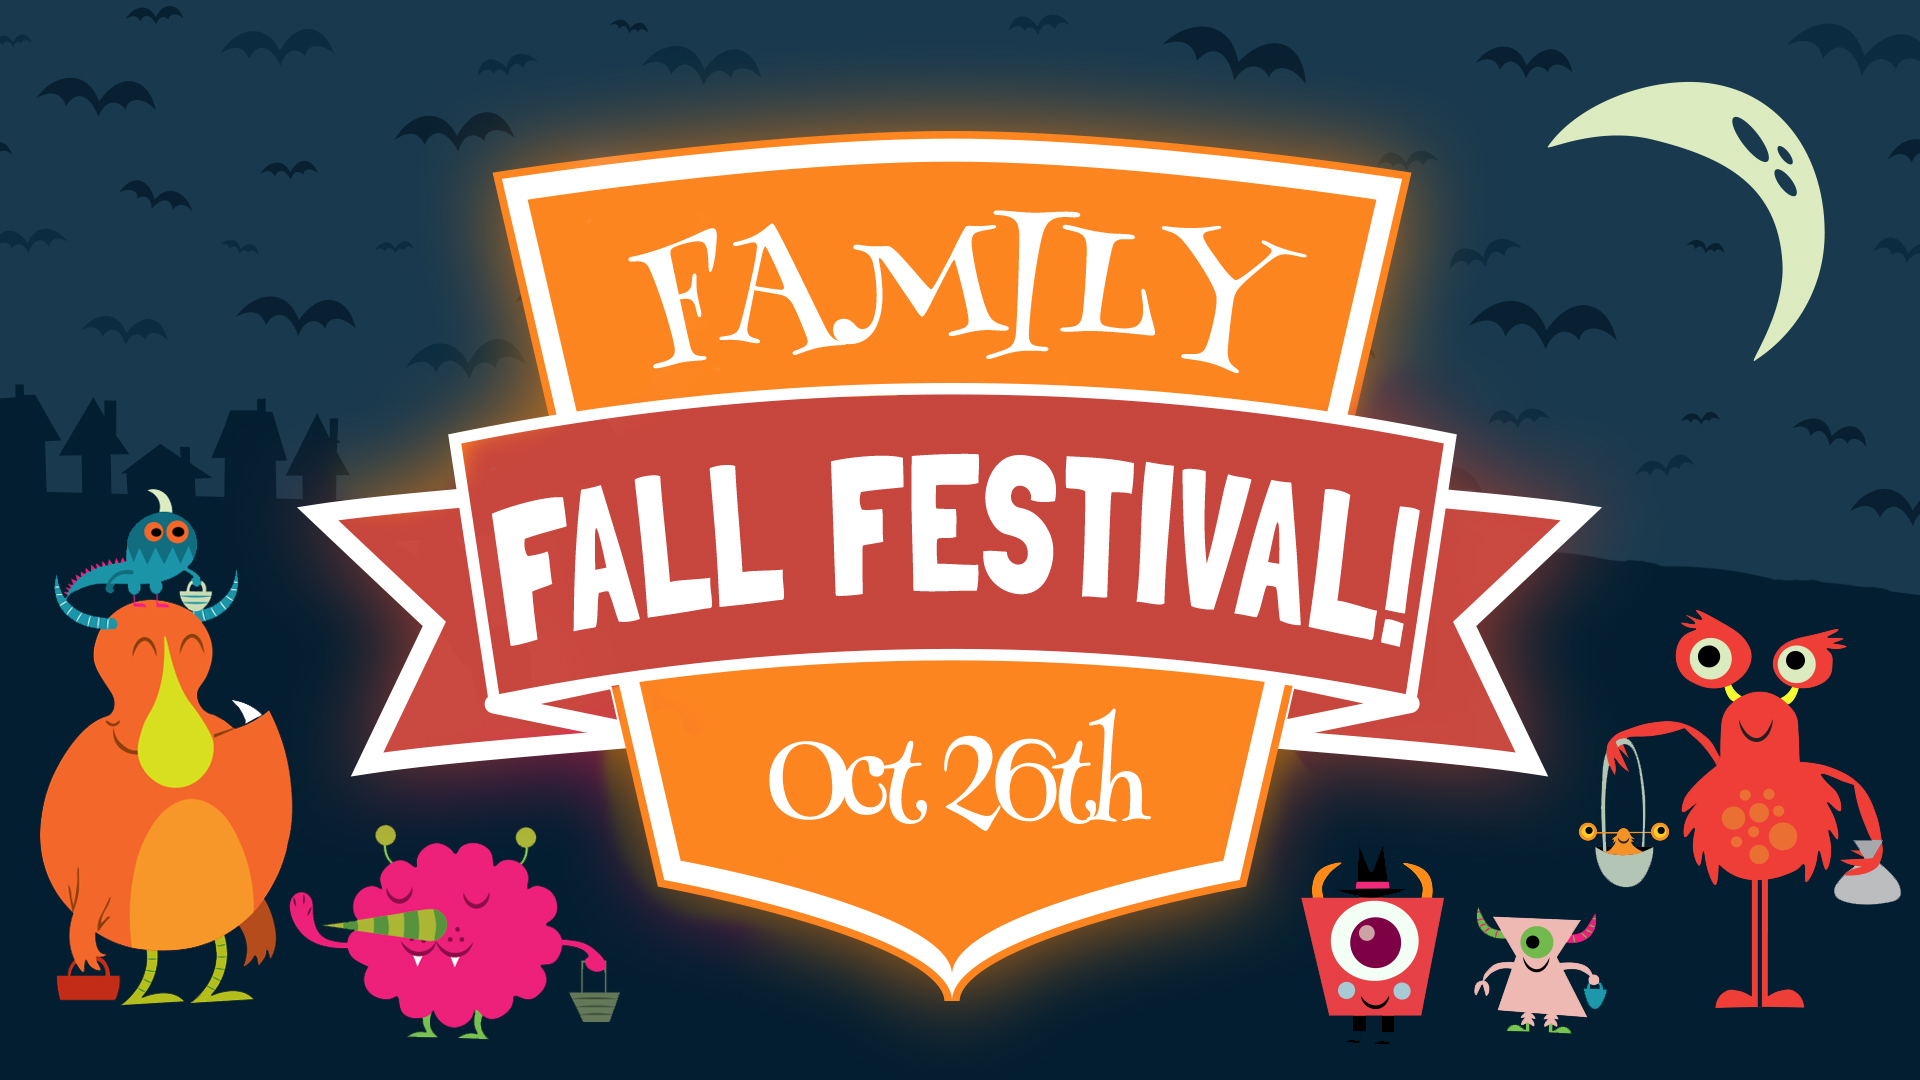 Fall Fest 2019